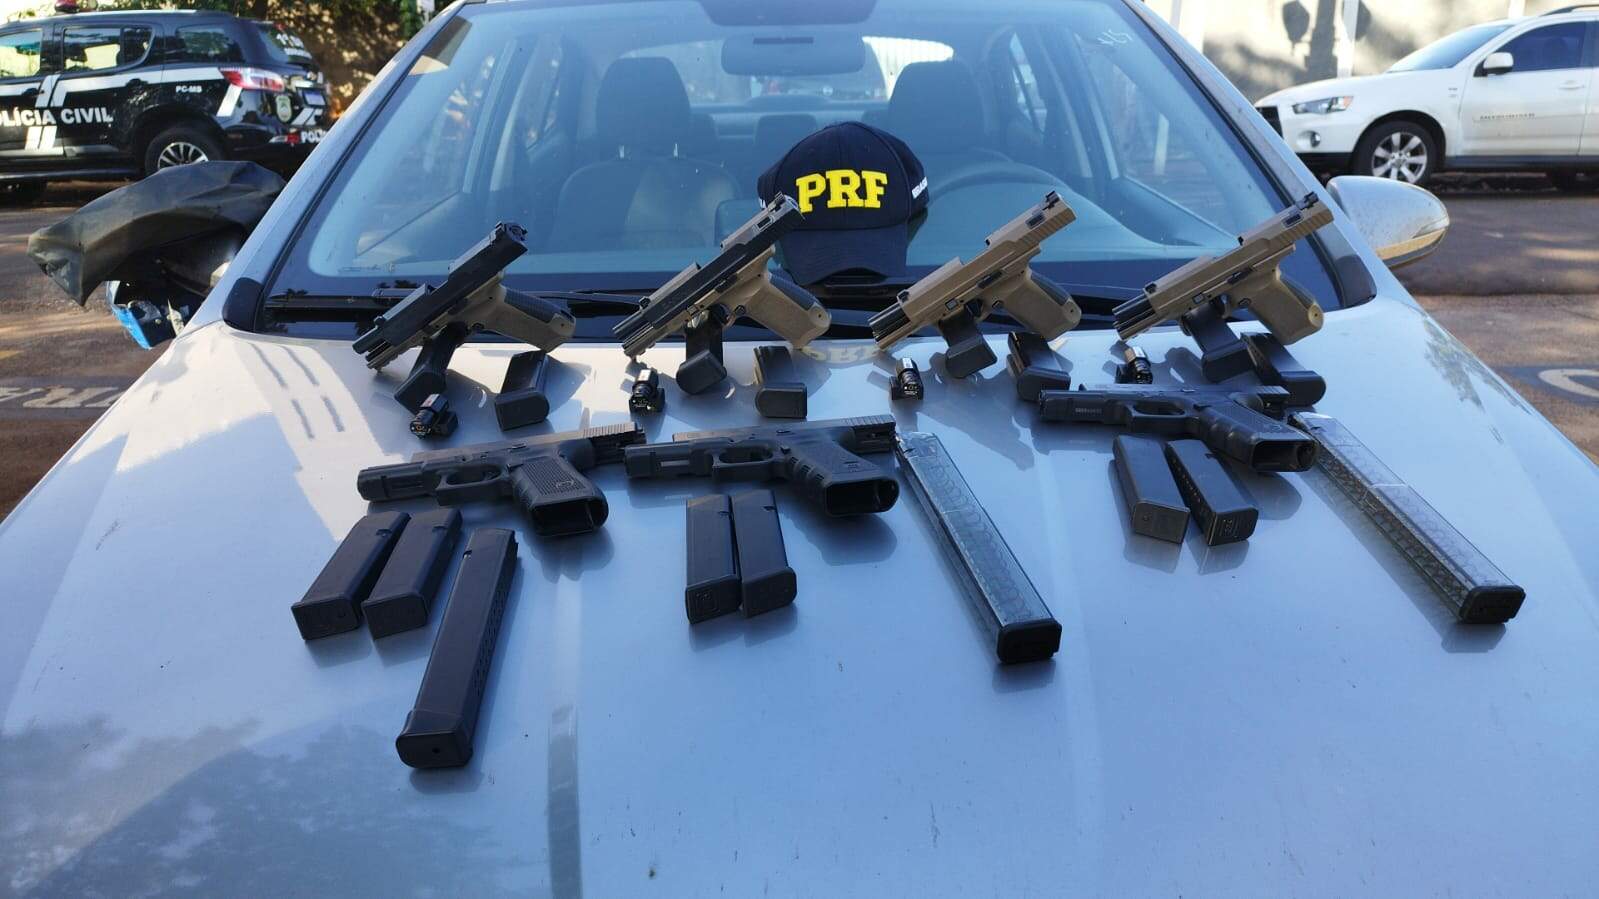 Polícia acha pistolas com “kit rajada” em carro no pátio de locadora